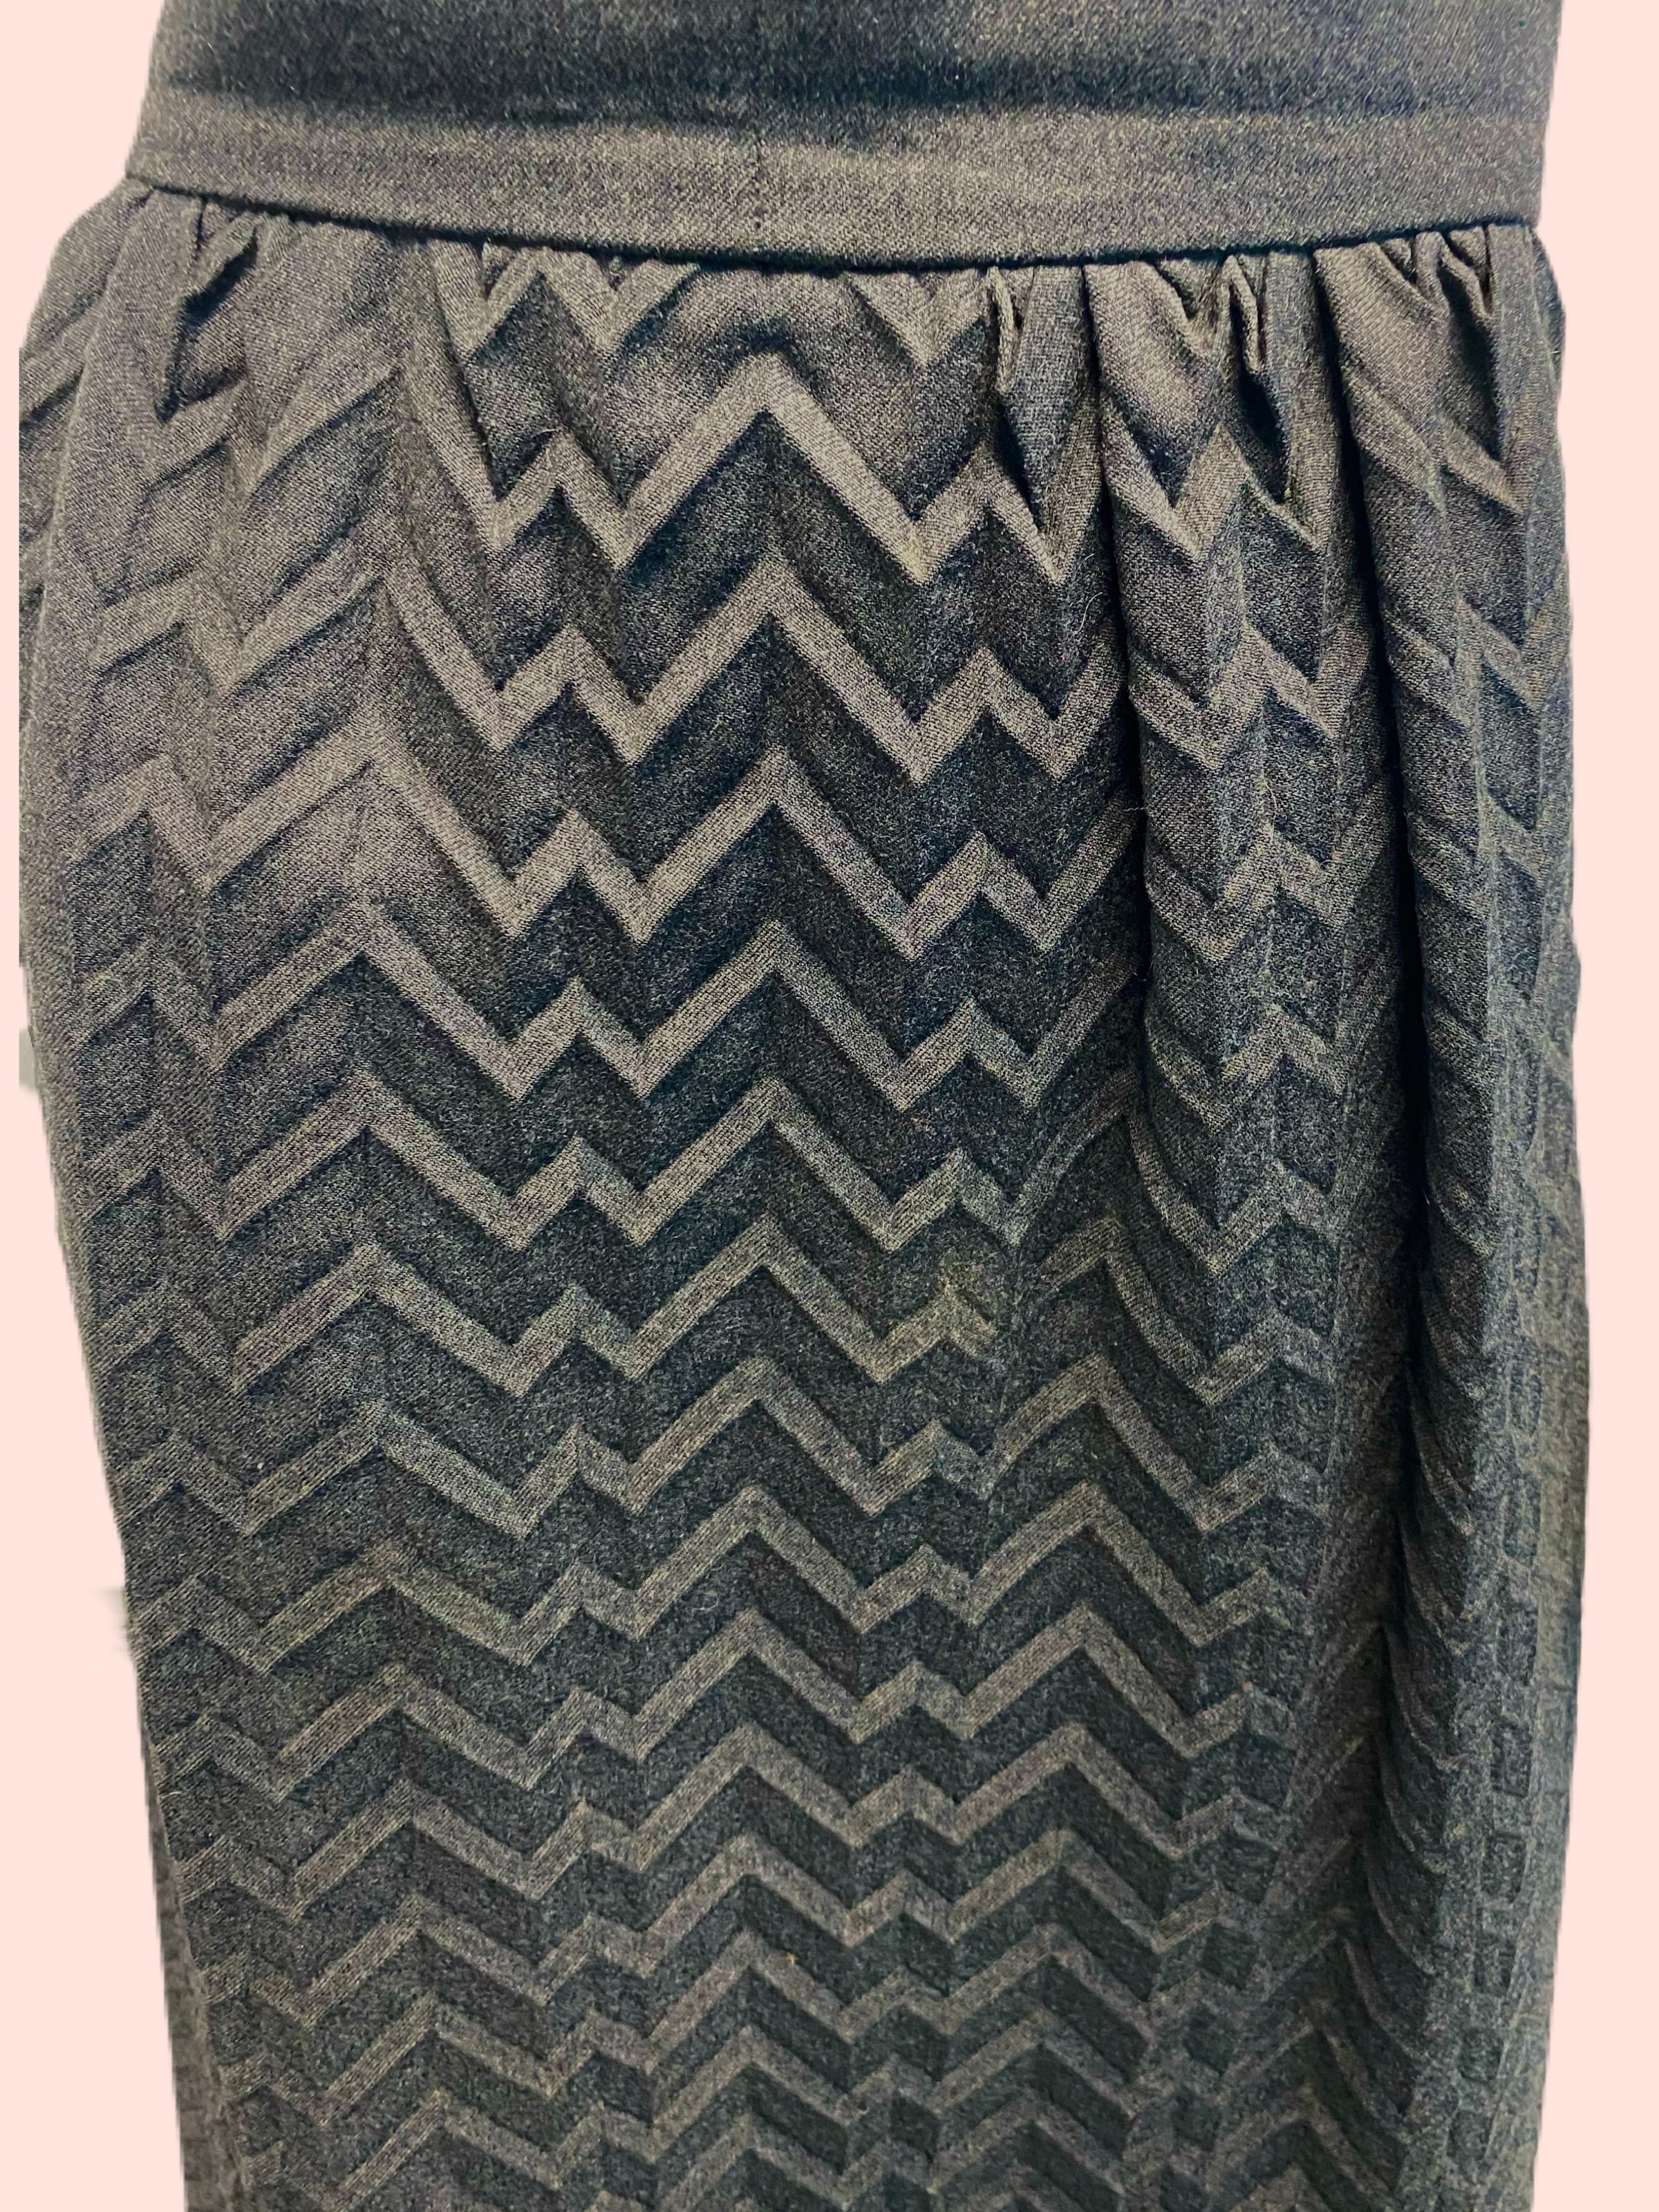 Lapis Green Brown Chevron Boho Crochet Knit Pullon Midi Skirt Size L | eBay